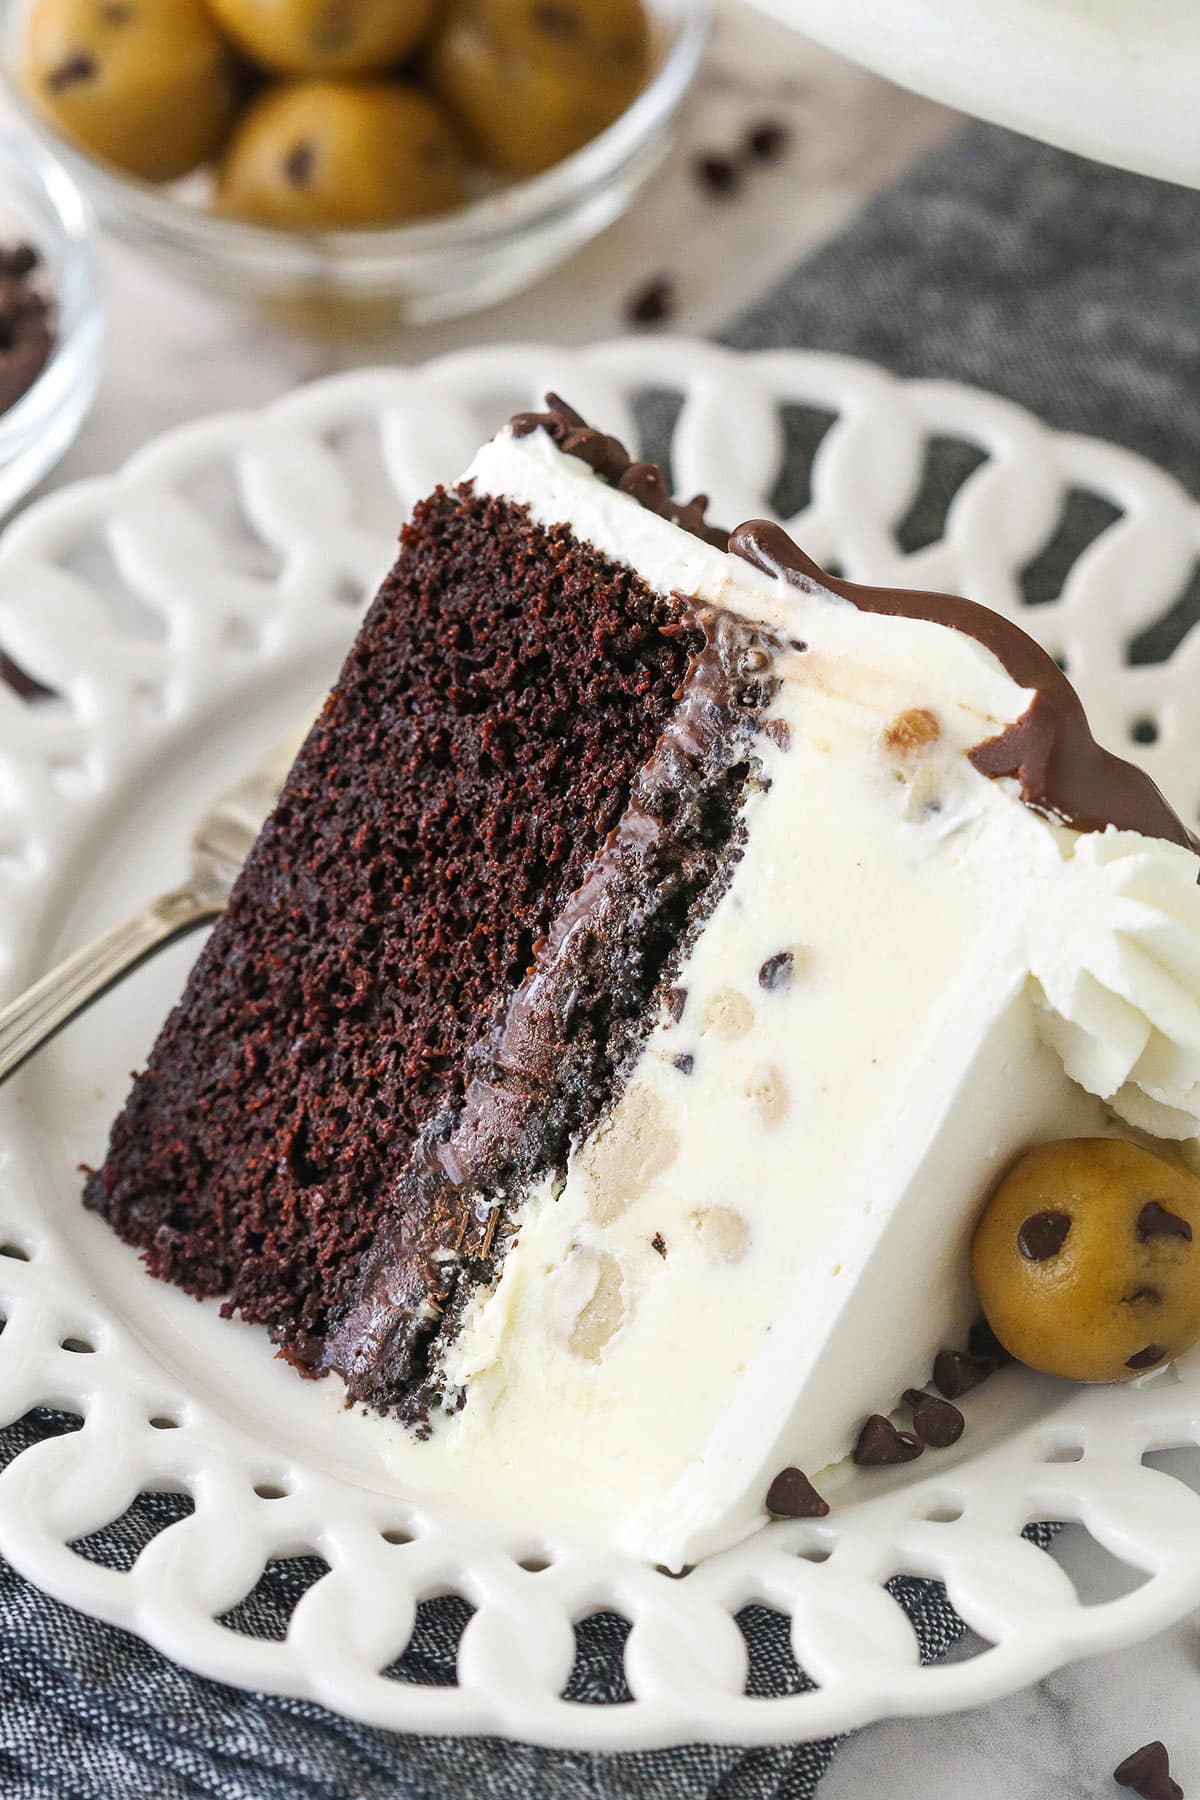 Orange Creamsicle Cake - The Baking ChocolaTess